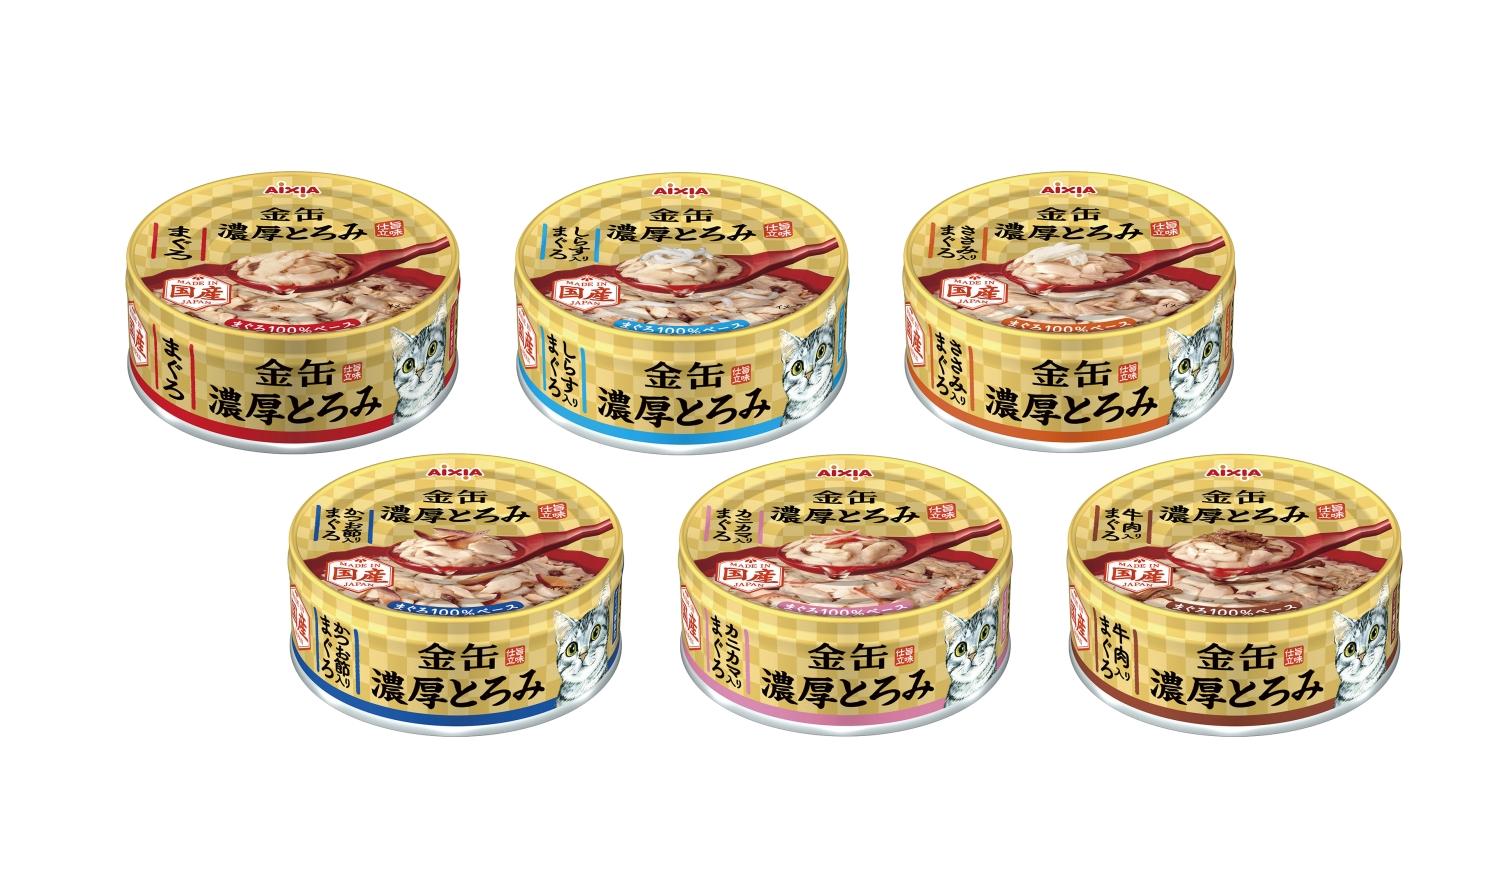 【愛喜雅 AIXIA 金罐濃厚湯罐 70g】金罐 濃厚 日本 副食罐 貓罐 貓 罐